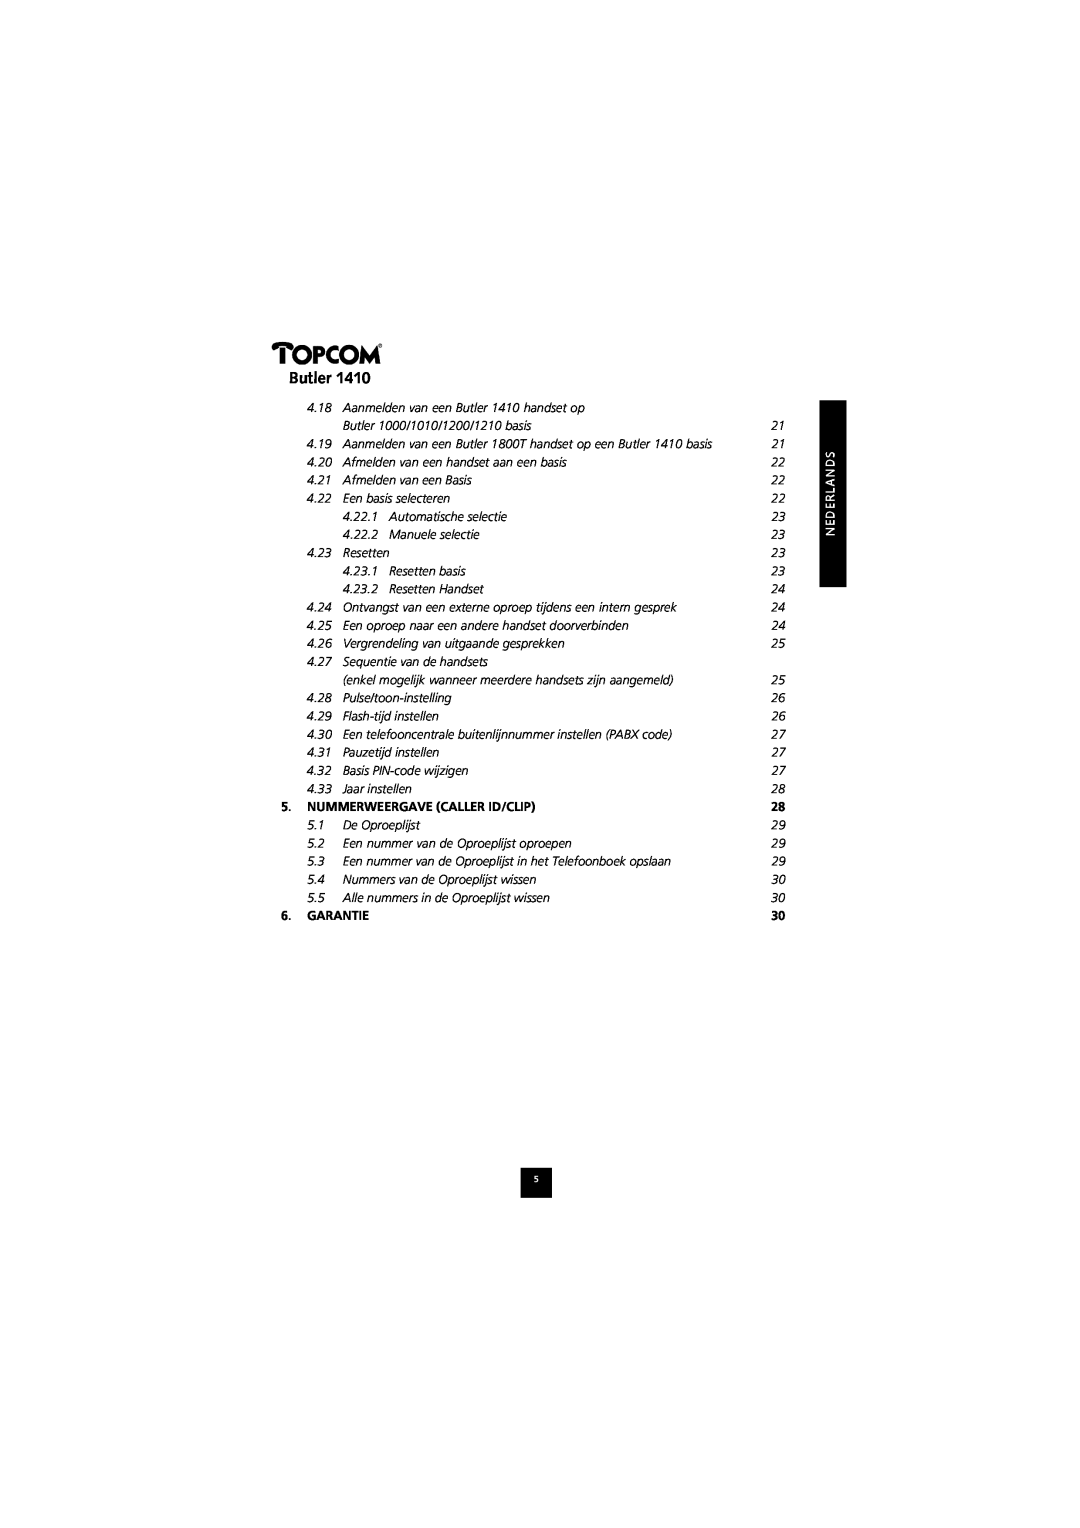 Topcom 1410 manual Butler, Nummerweergave Caller Id/Clip, Garantie 